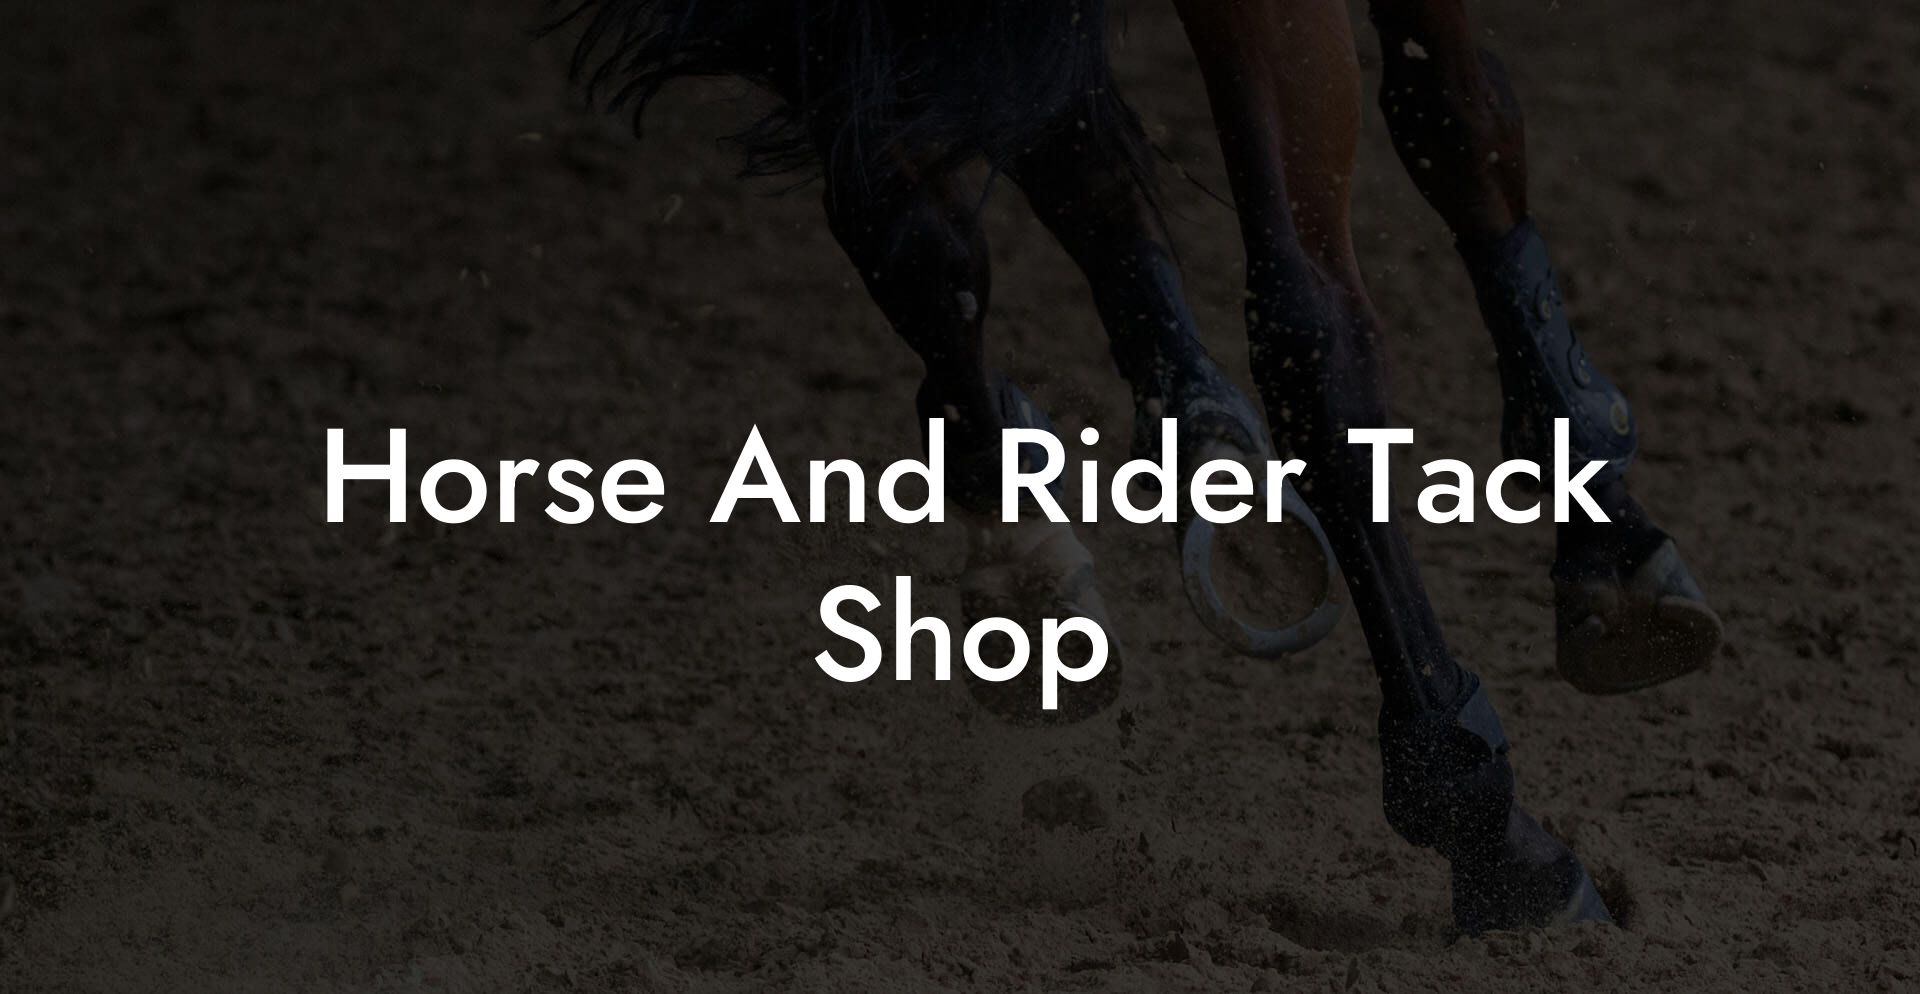 Horse And Rider Tack Shop